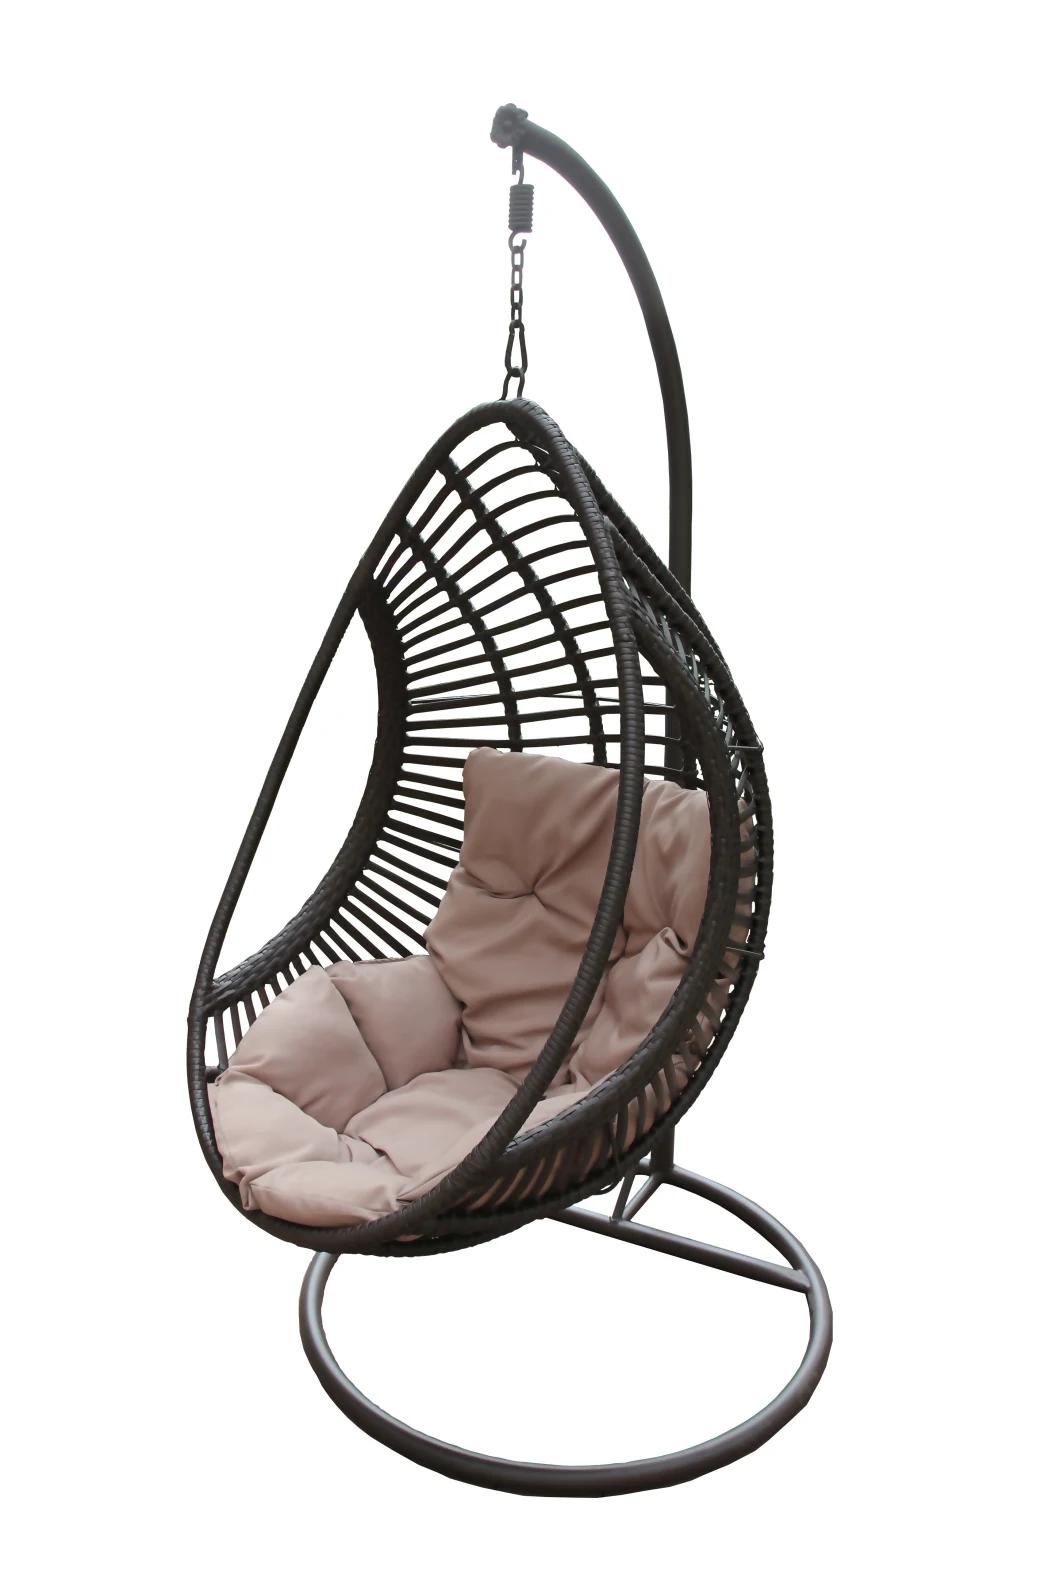 Outdoor Patio Wicker Hammock Garden Hanging Rattan Egg Swing Chair